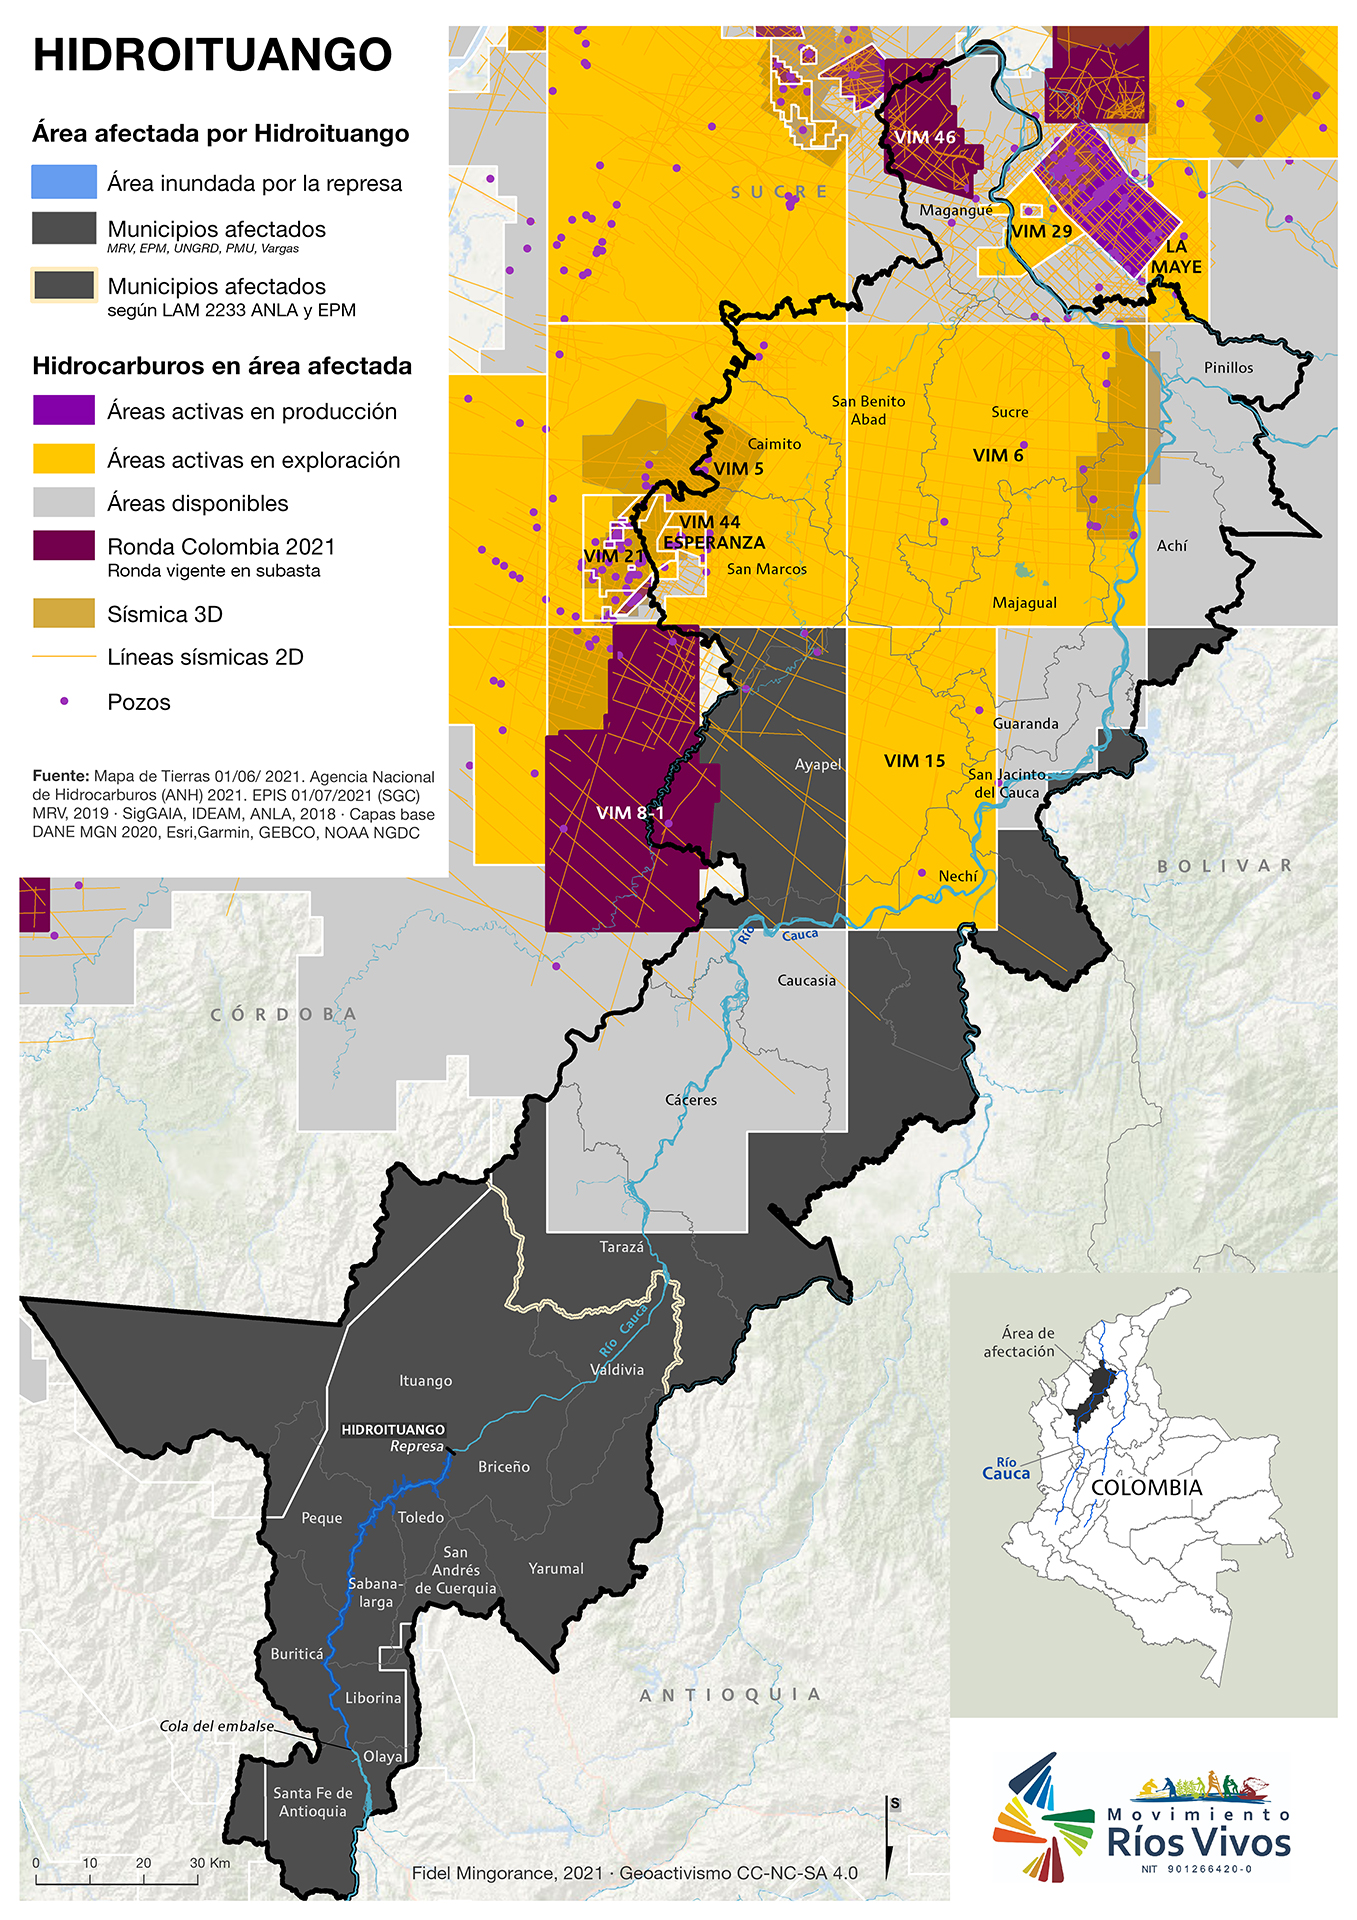 Hidrocarburos en área afectada por Hidroituango (julio 2021)